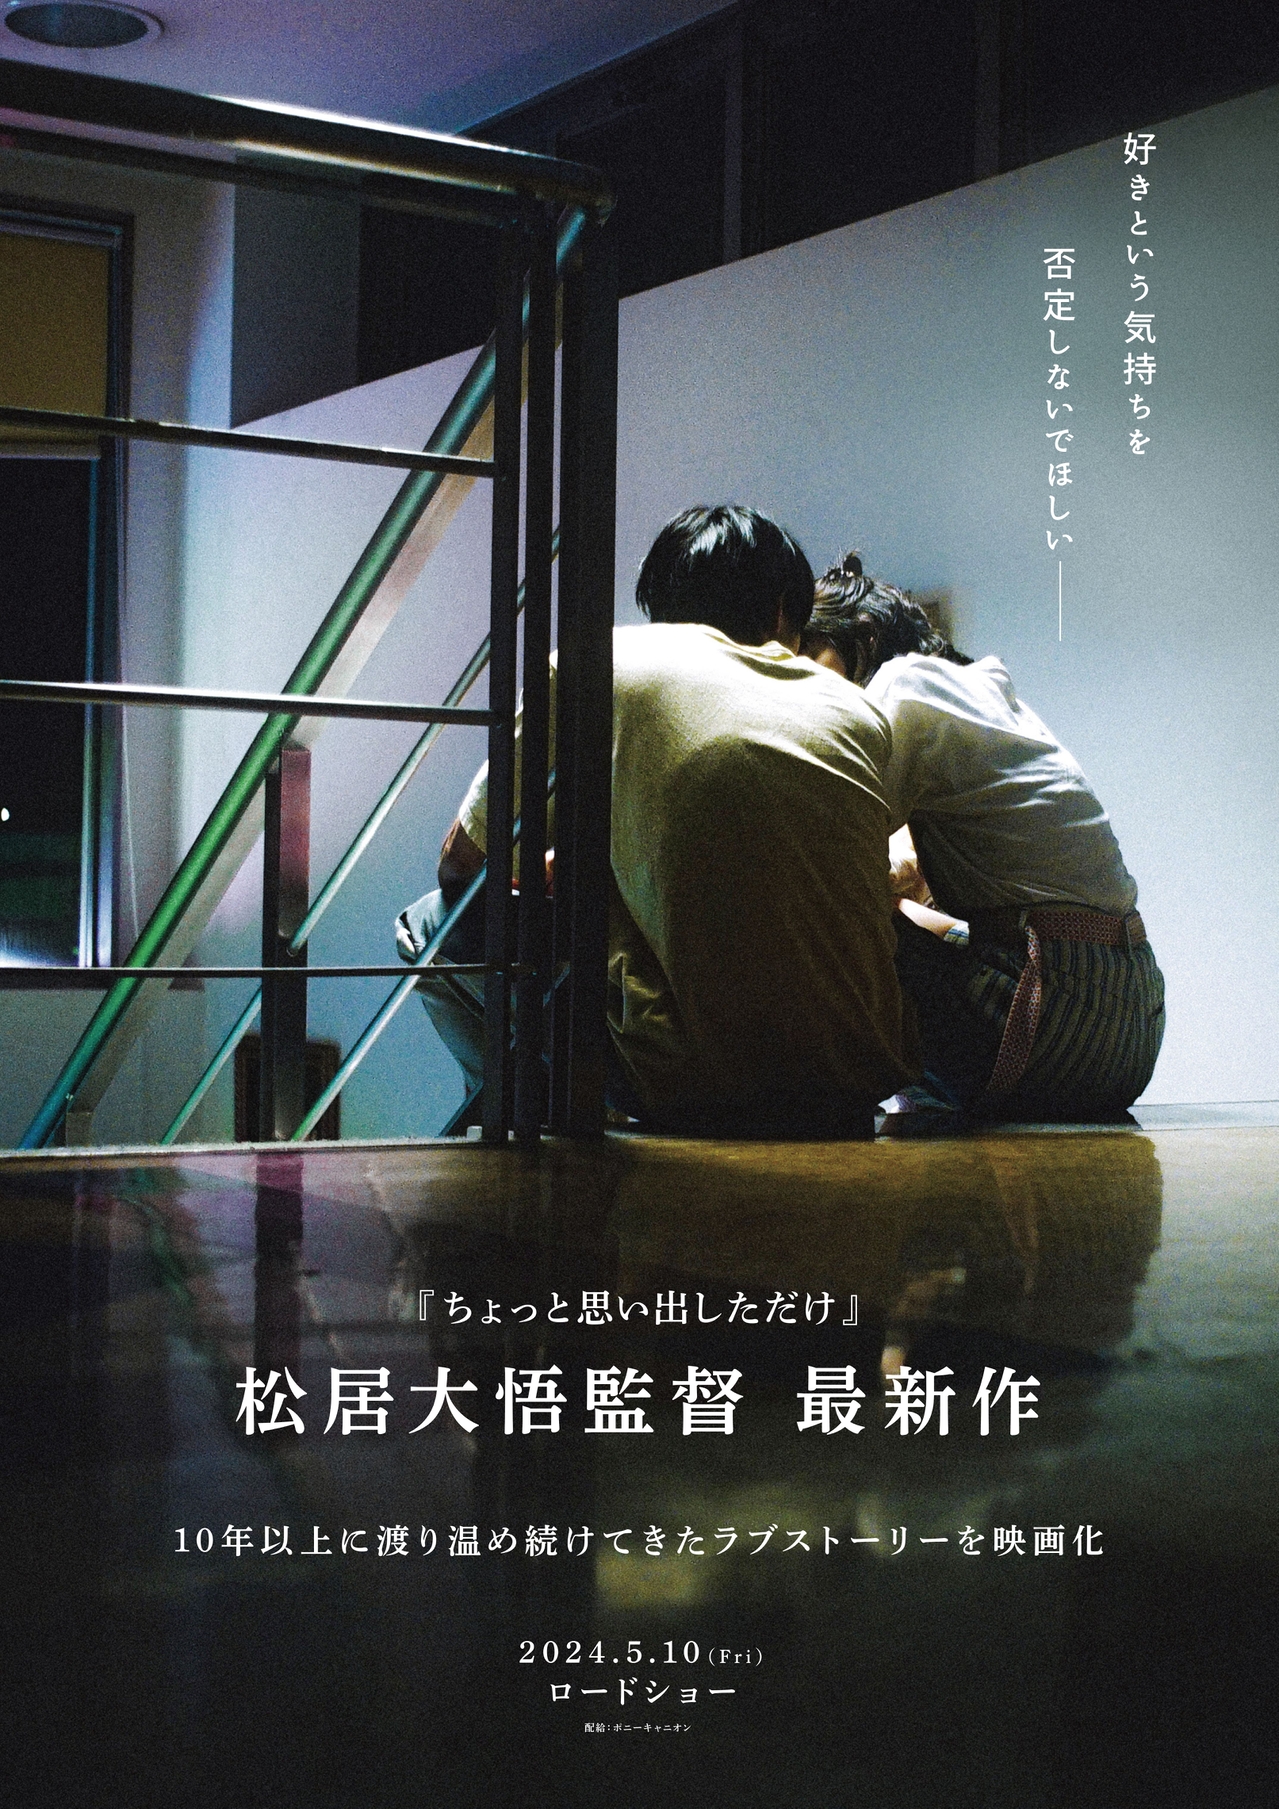 松居大悟監督が挑む“無防備な恋愛映画”5月10日公開決定 タイトル・出演者・原作は後日発表